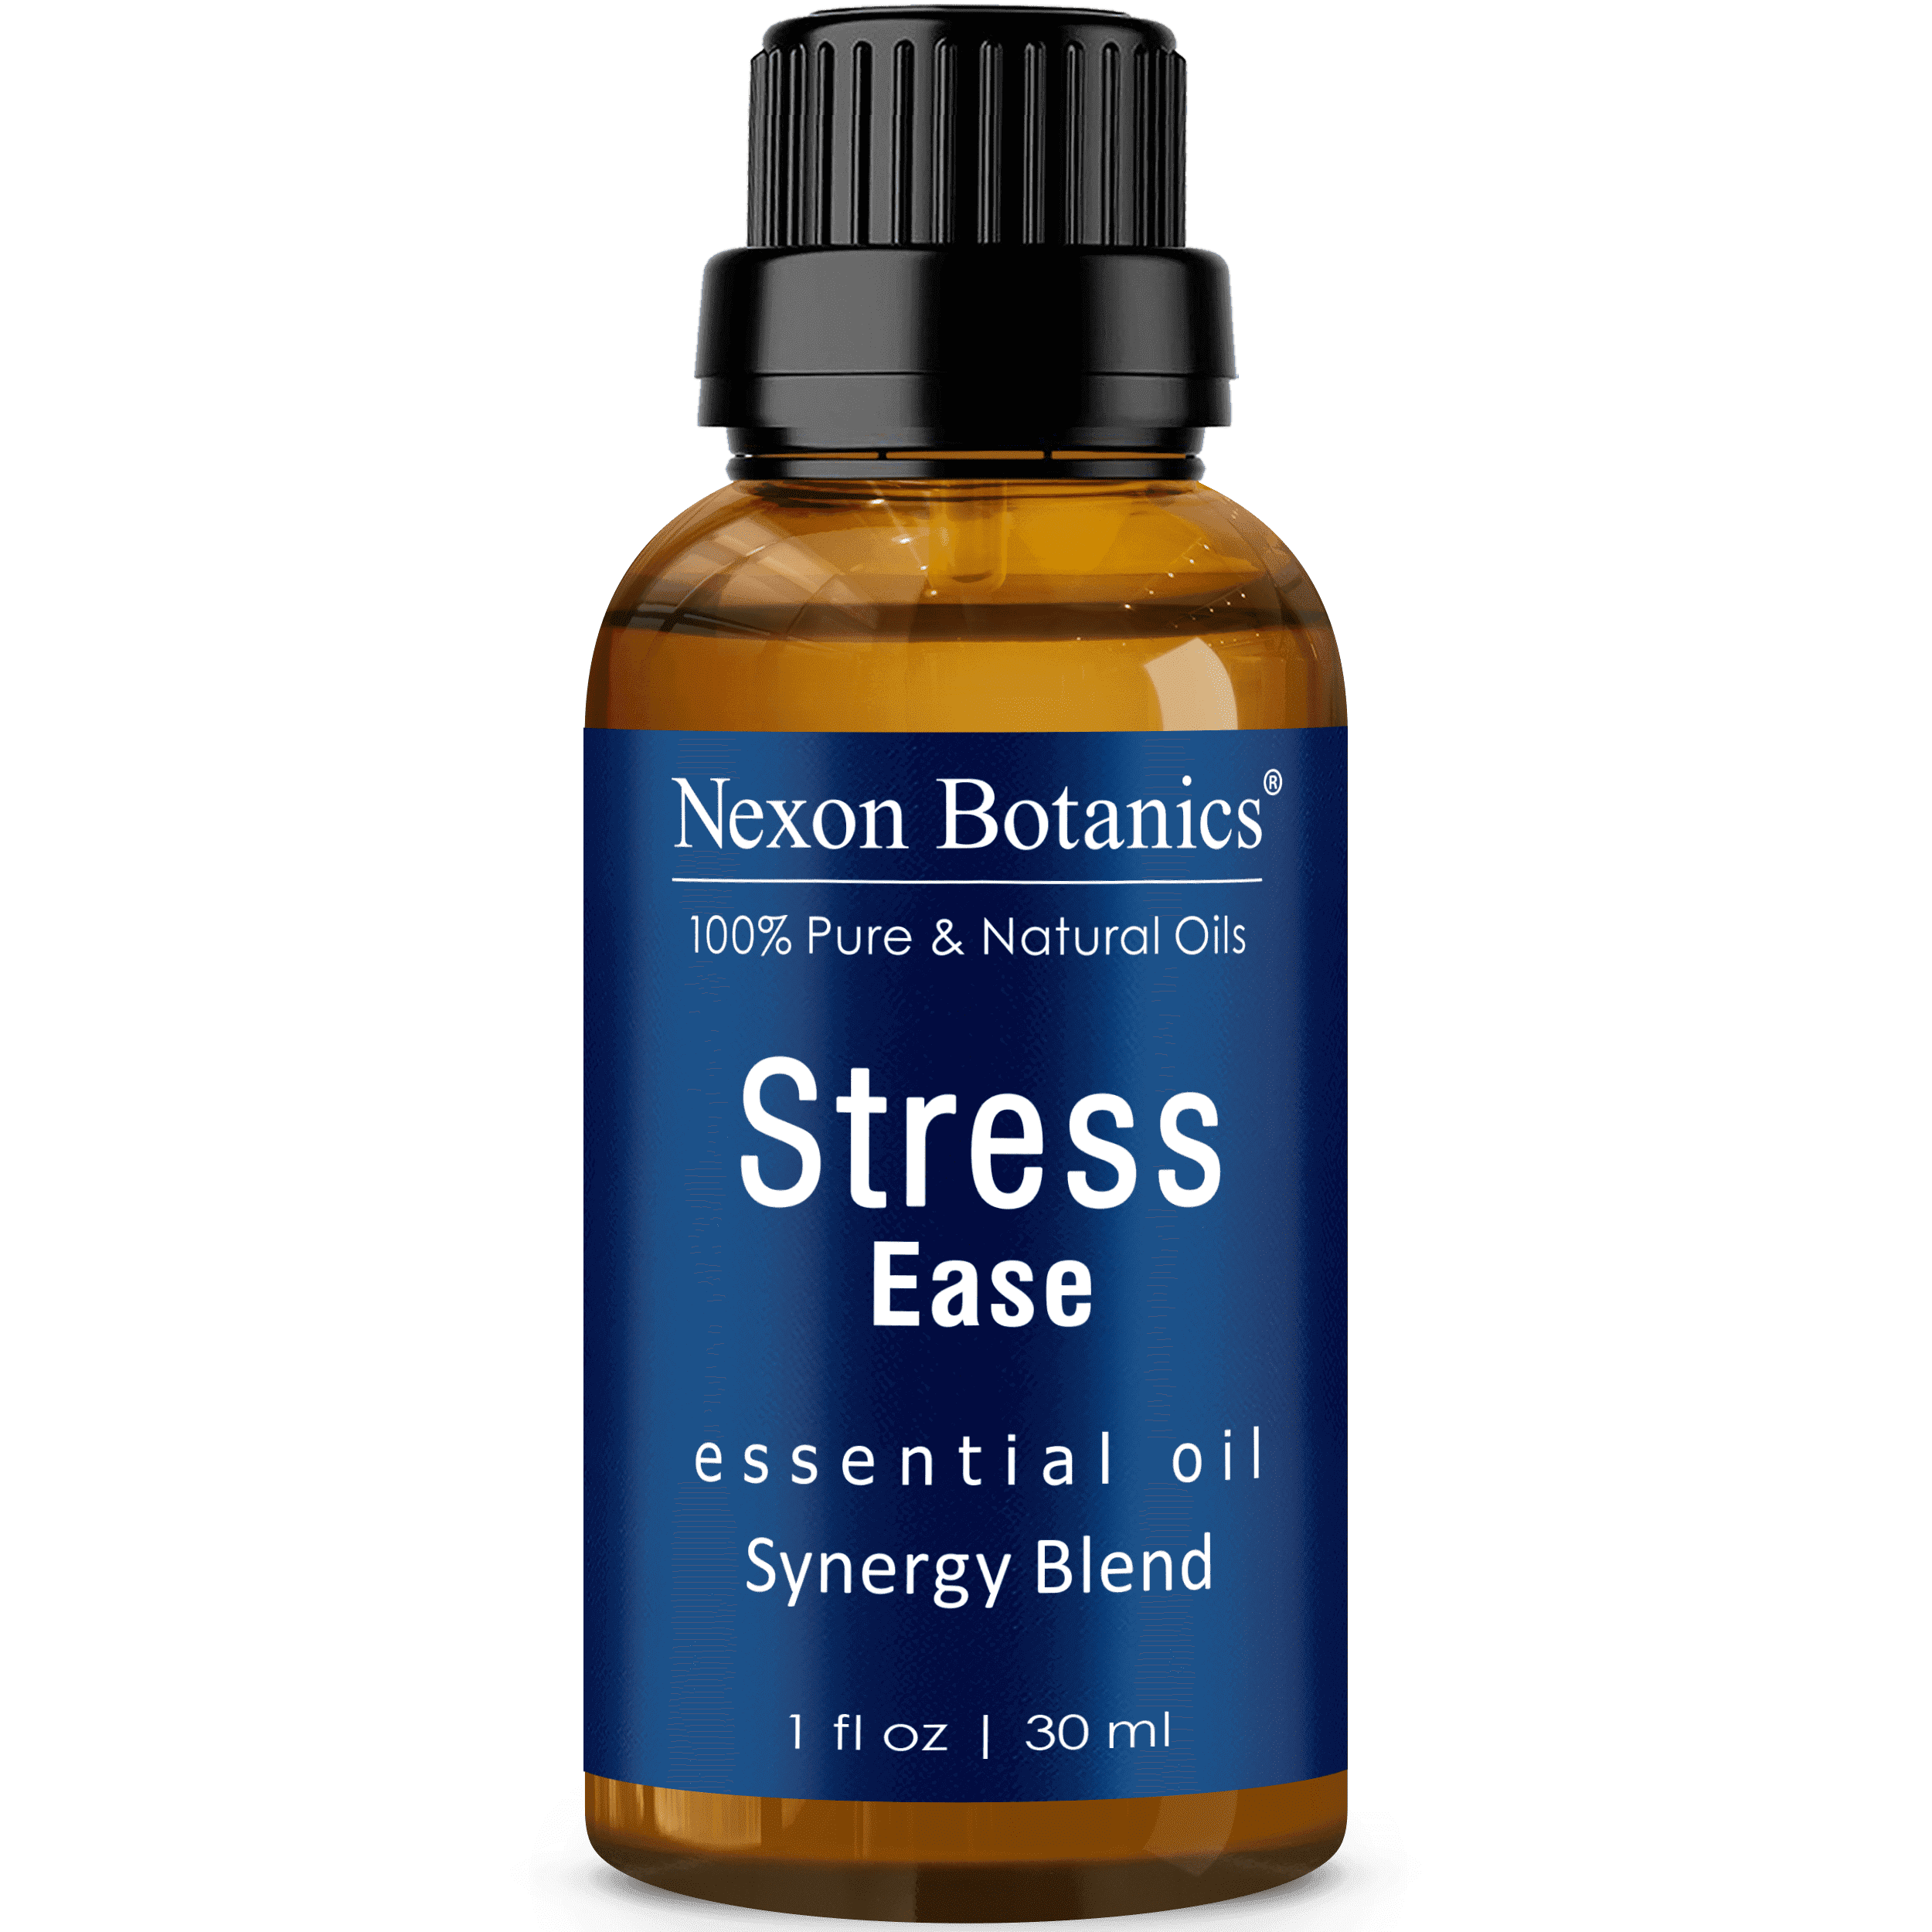 nexon botanics stress ease essential oil synergy blend - 30 ml bottle